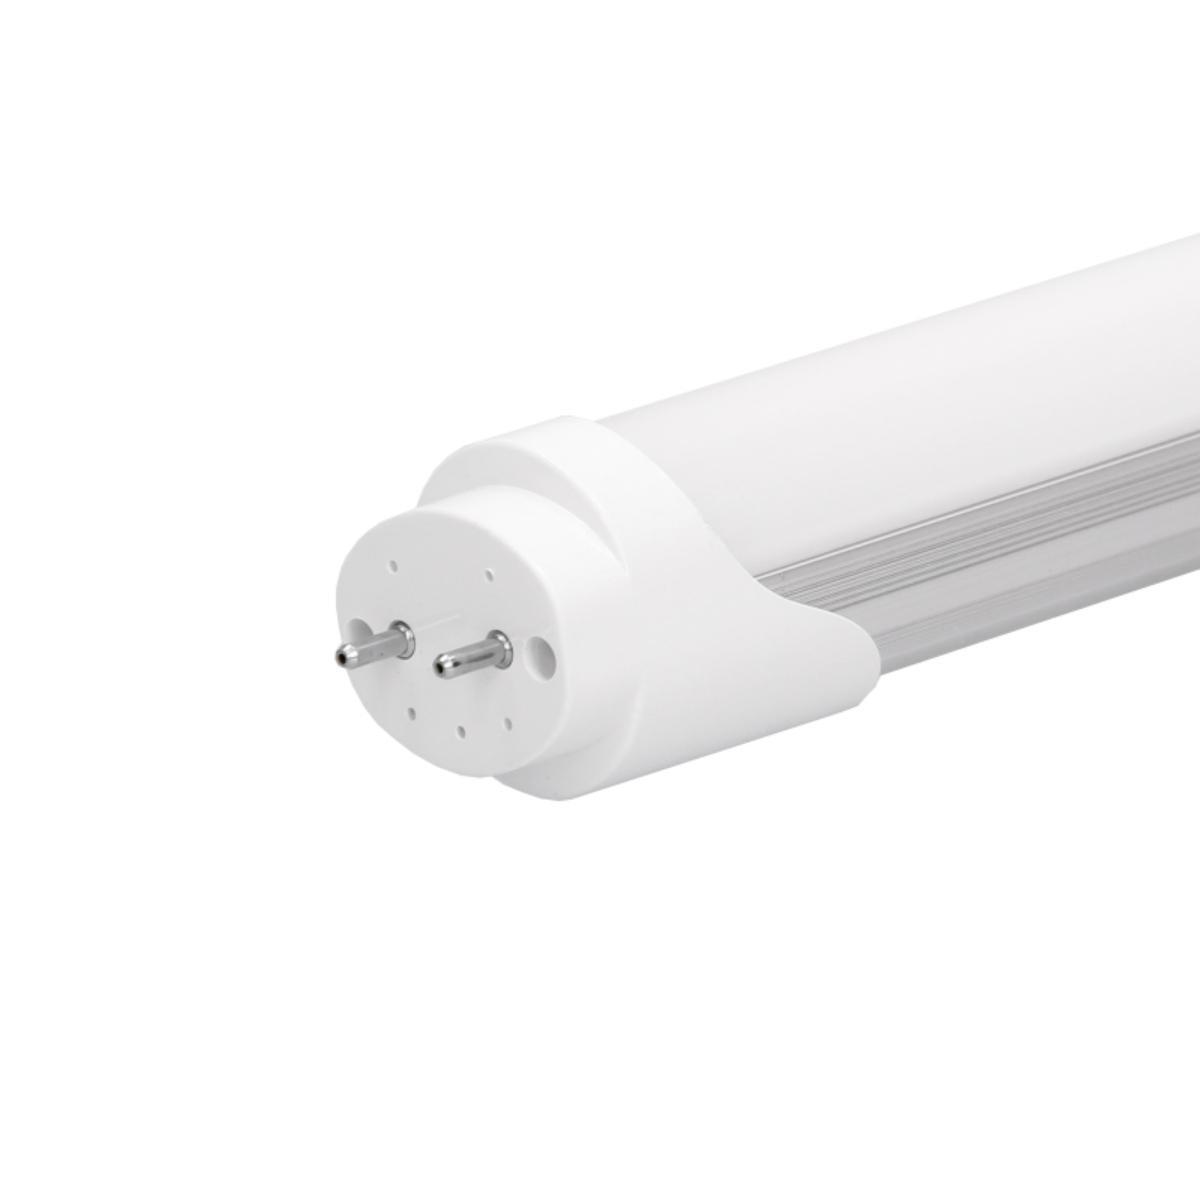 LED lysstofrør T8 varm hvid 14W 90 cm + starter | Elgiganten